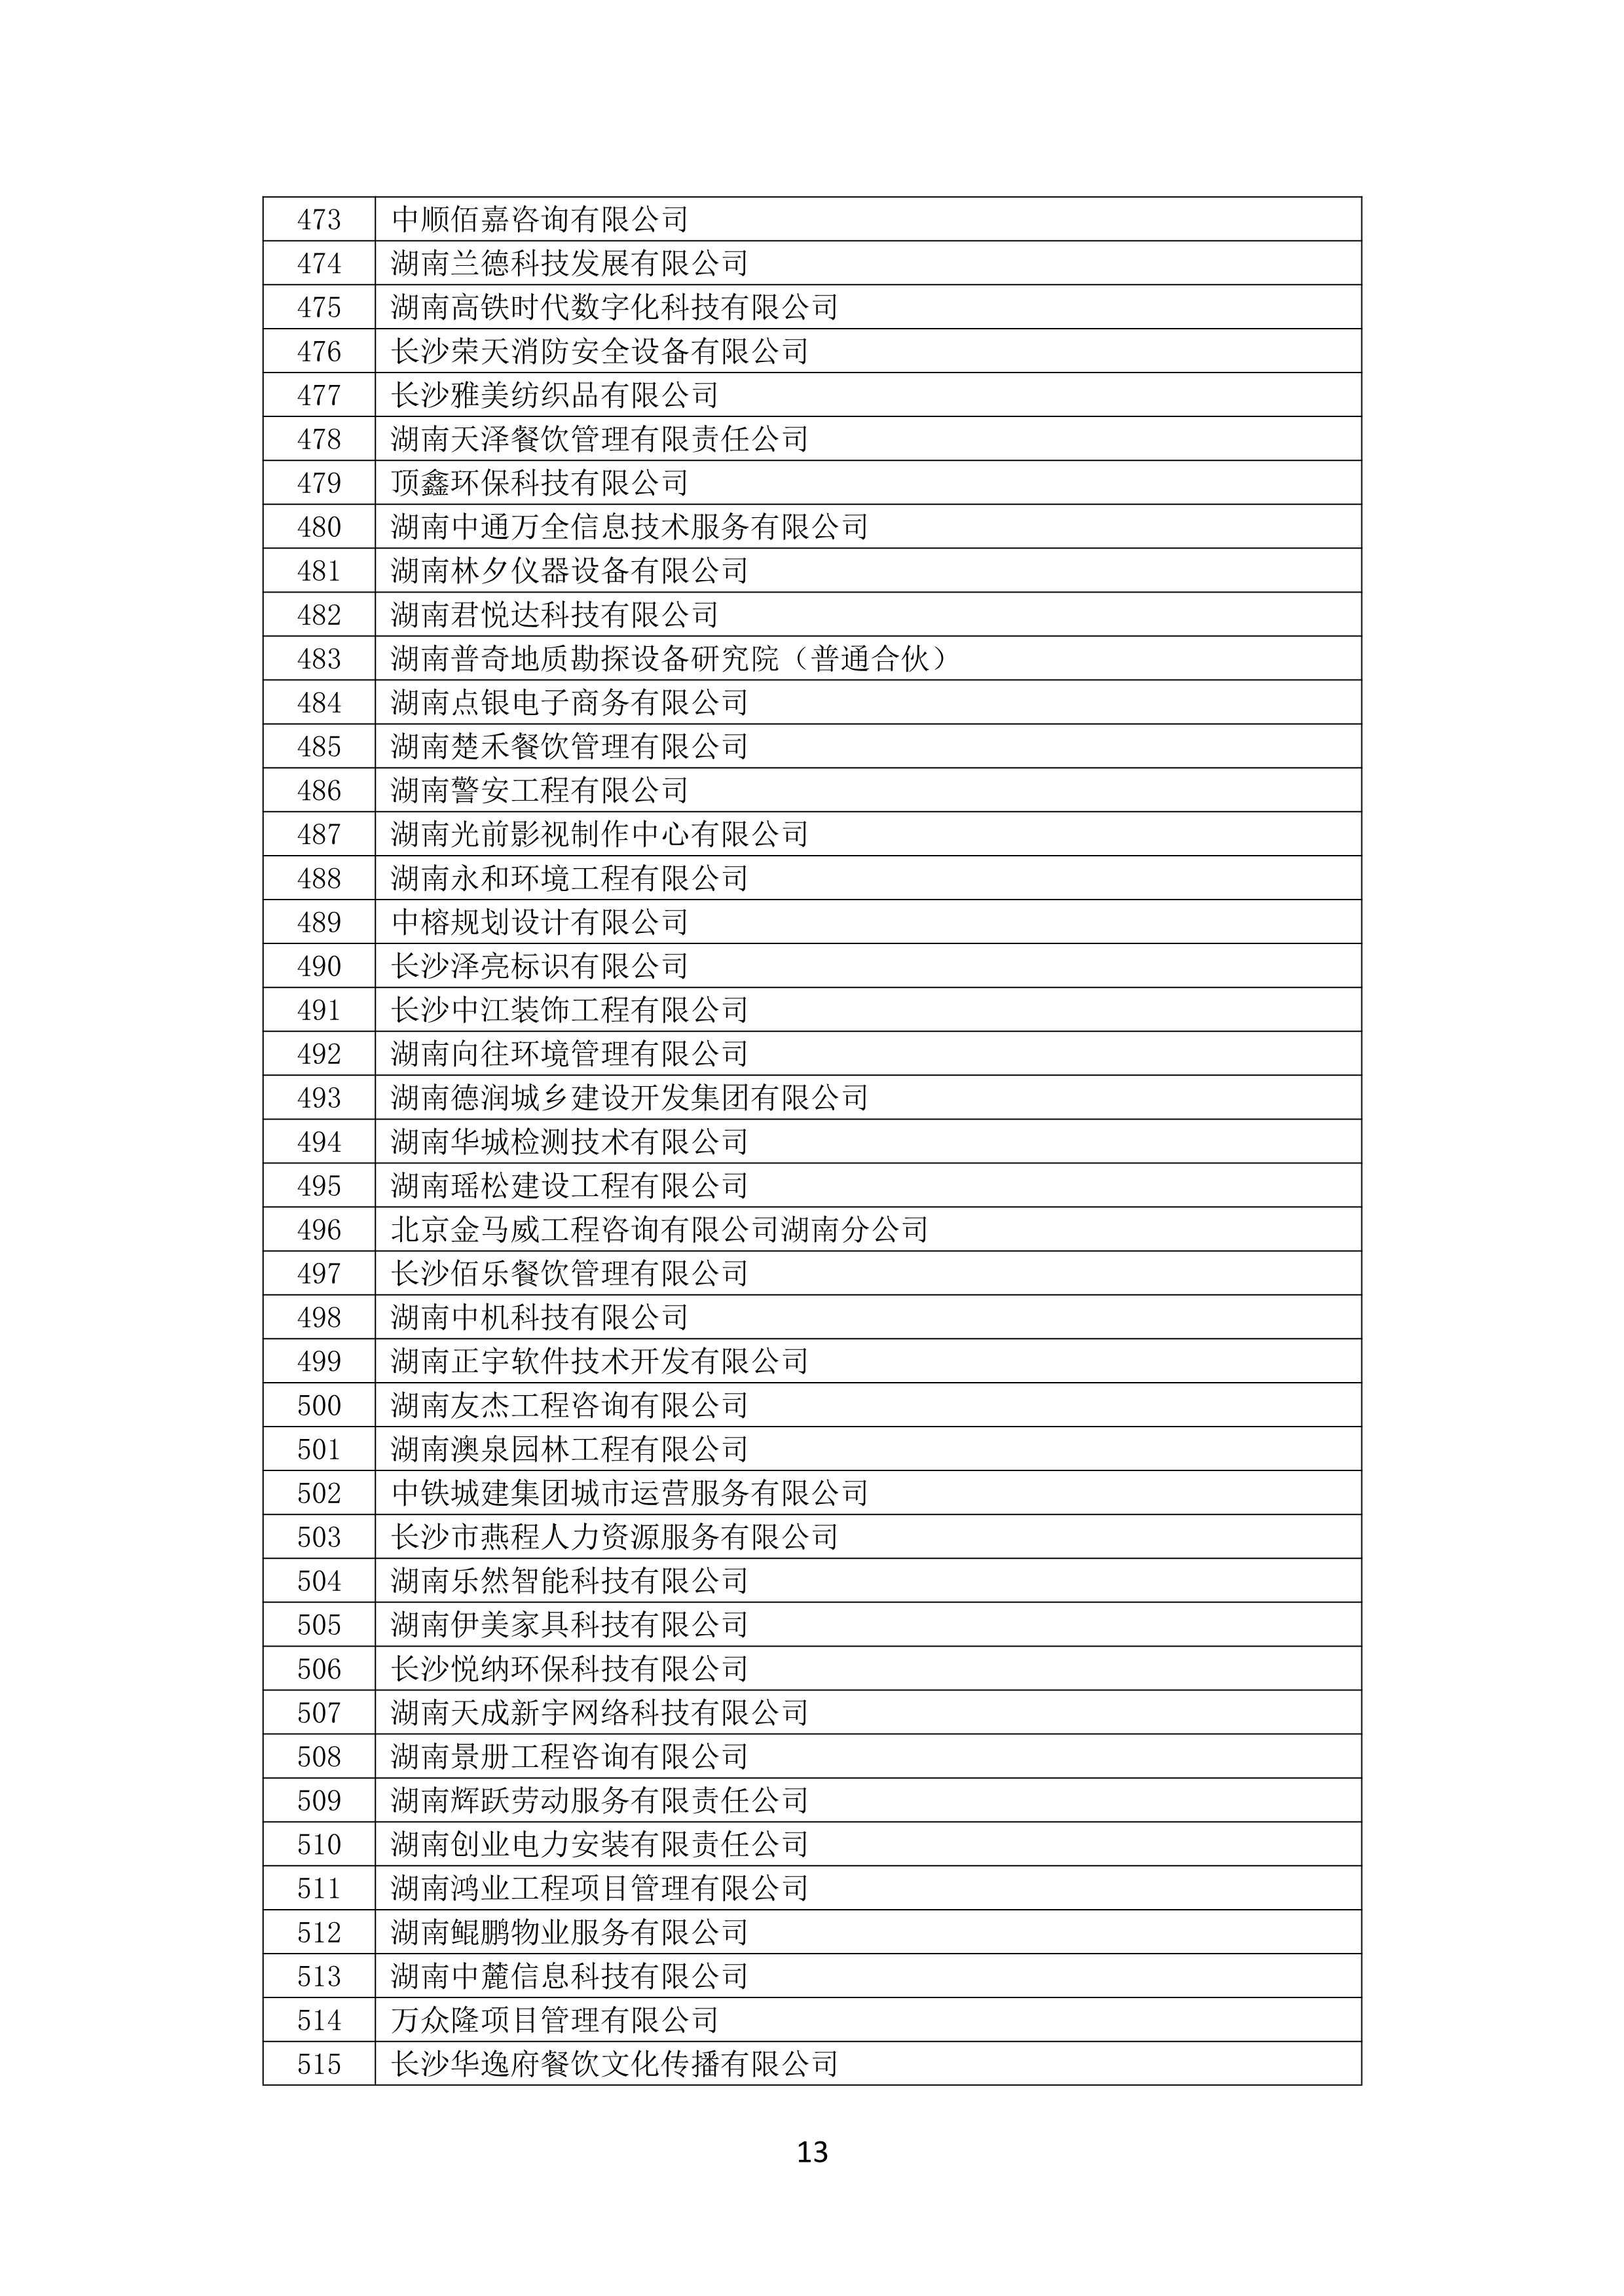 2021 年(nián)度湖南省守合同重信用企業名單_14.png